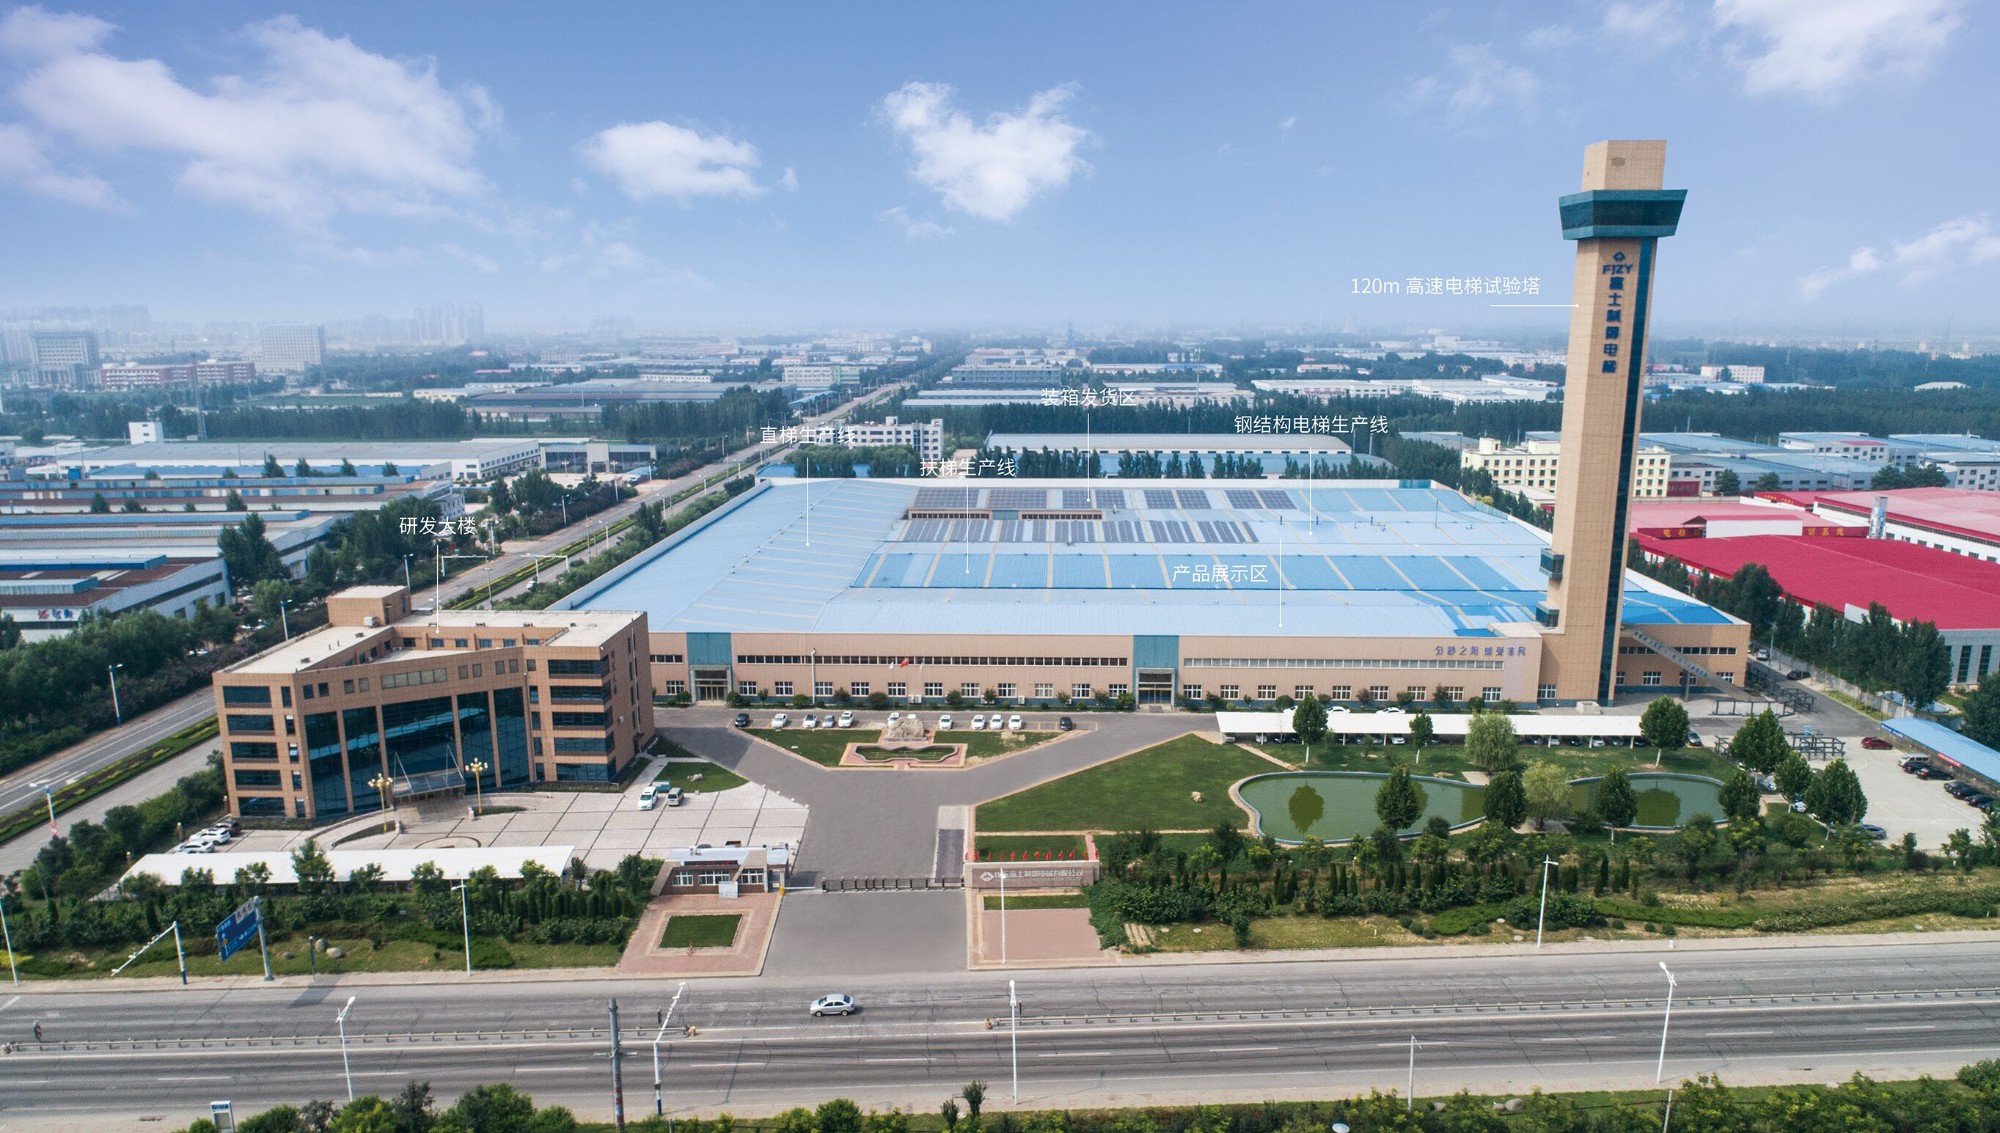 Le projet d'escalator du Shandong FUJIZY se vend bien sur le marché international